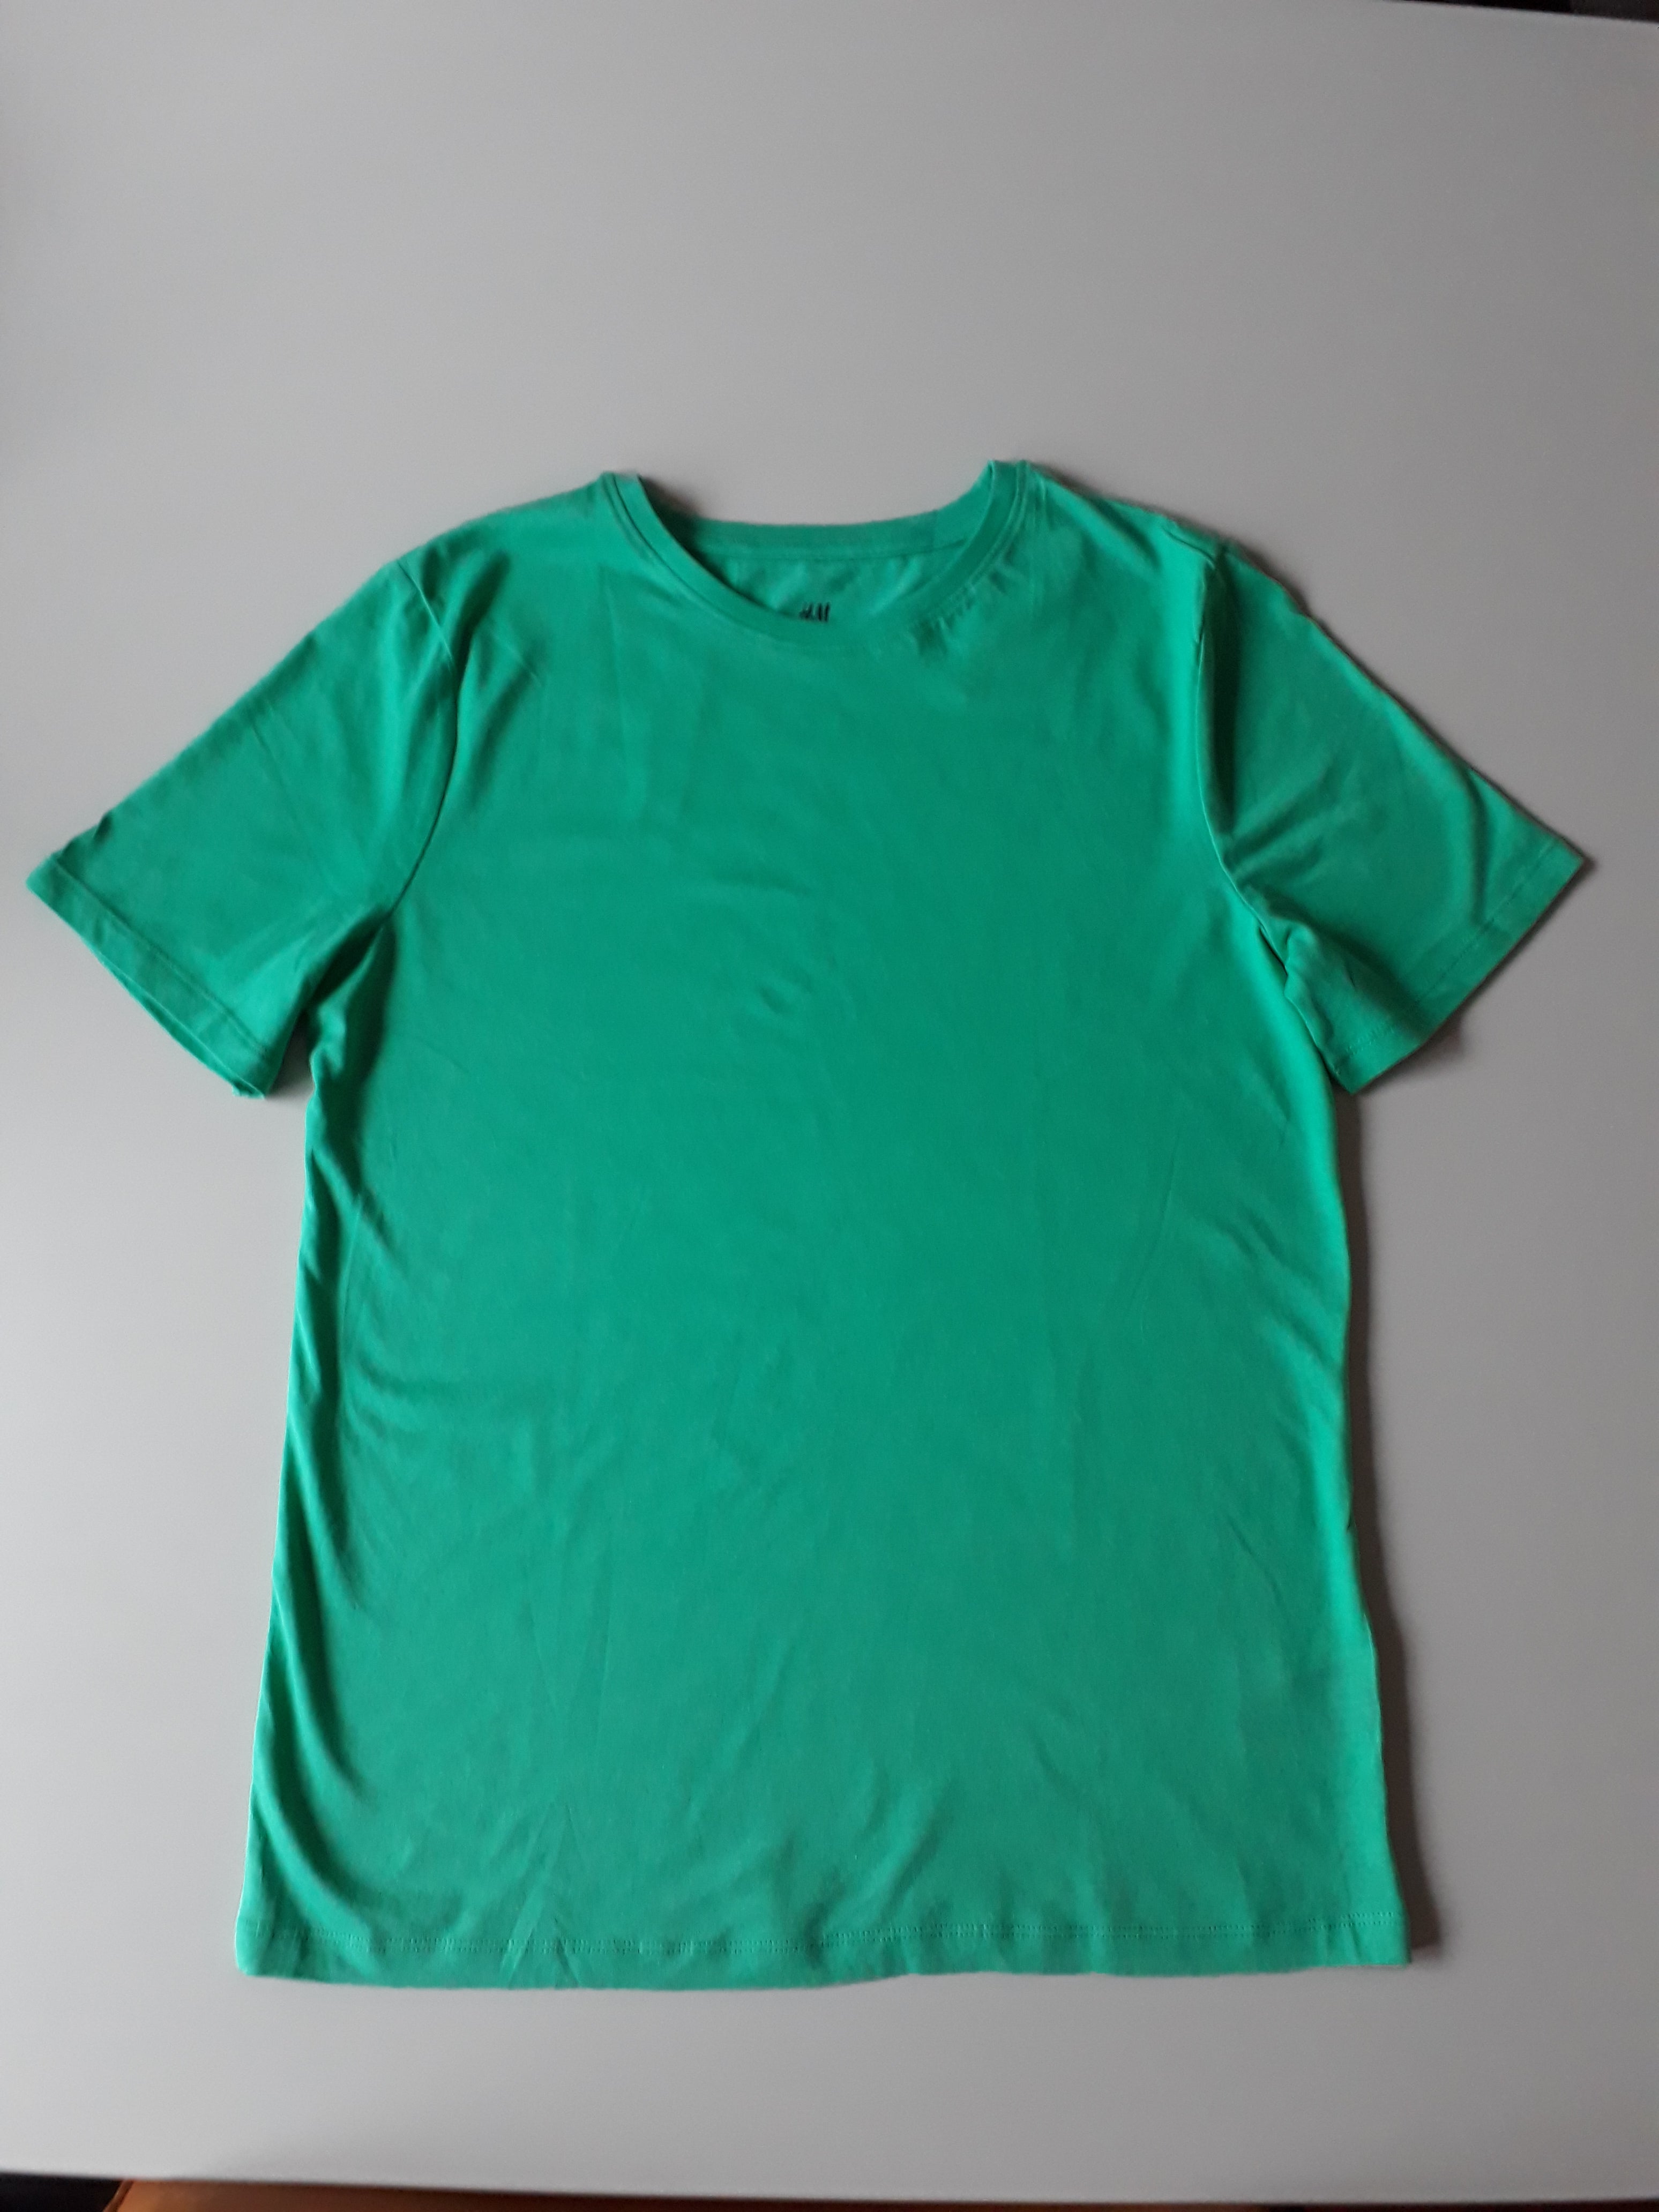 T-shirt groen Tiener - 2dehands nieuw